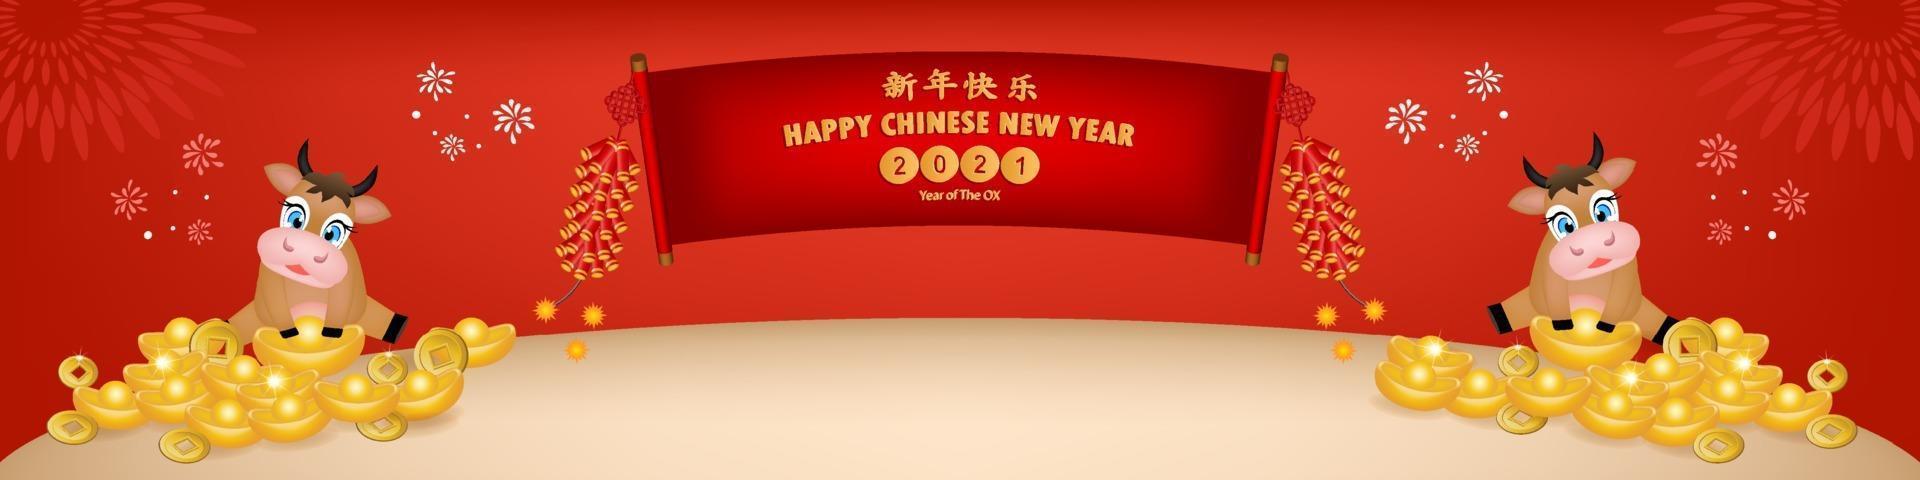 chinesisches Neujahr 2021 Jahr des Ochsen, roter Papierschnitt Ochsencharakter, Blume und asiatische Elemente mit Bastelstil auf Hintergrund.chinesische Übersetzung ist froh chinesisches Neujahr 2021, Jahr des Ochsen. vektor